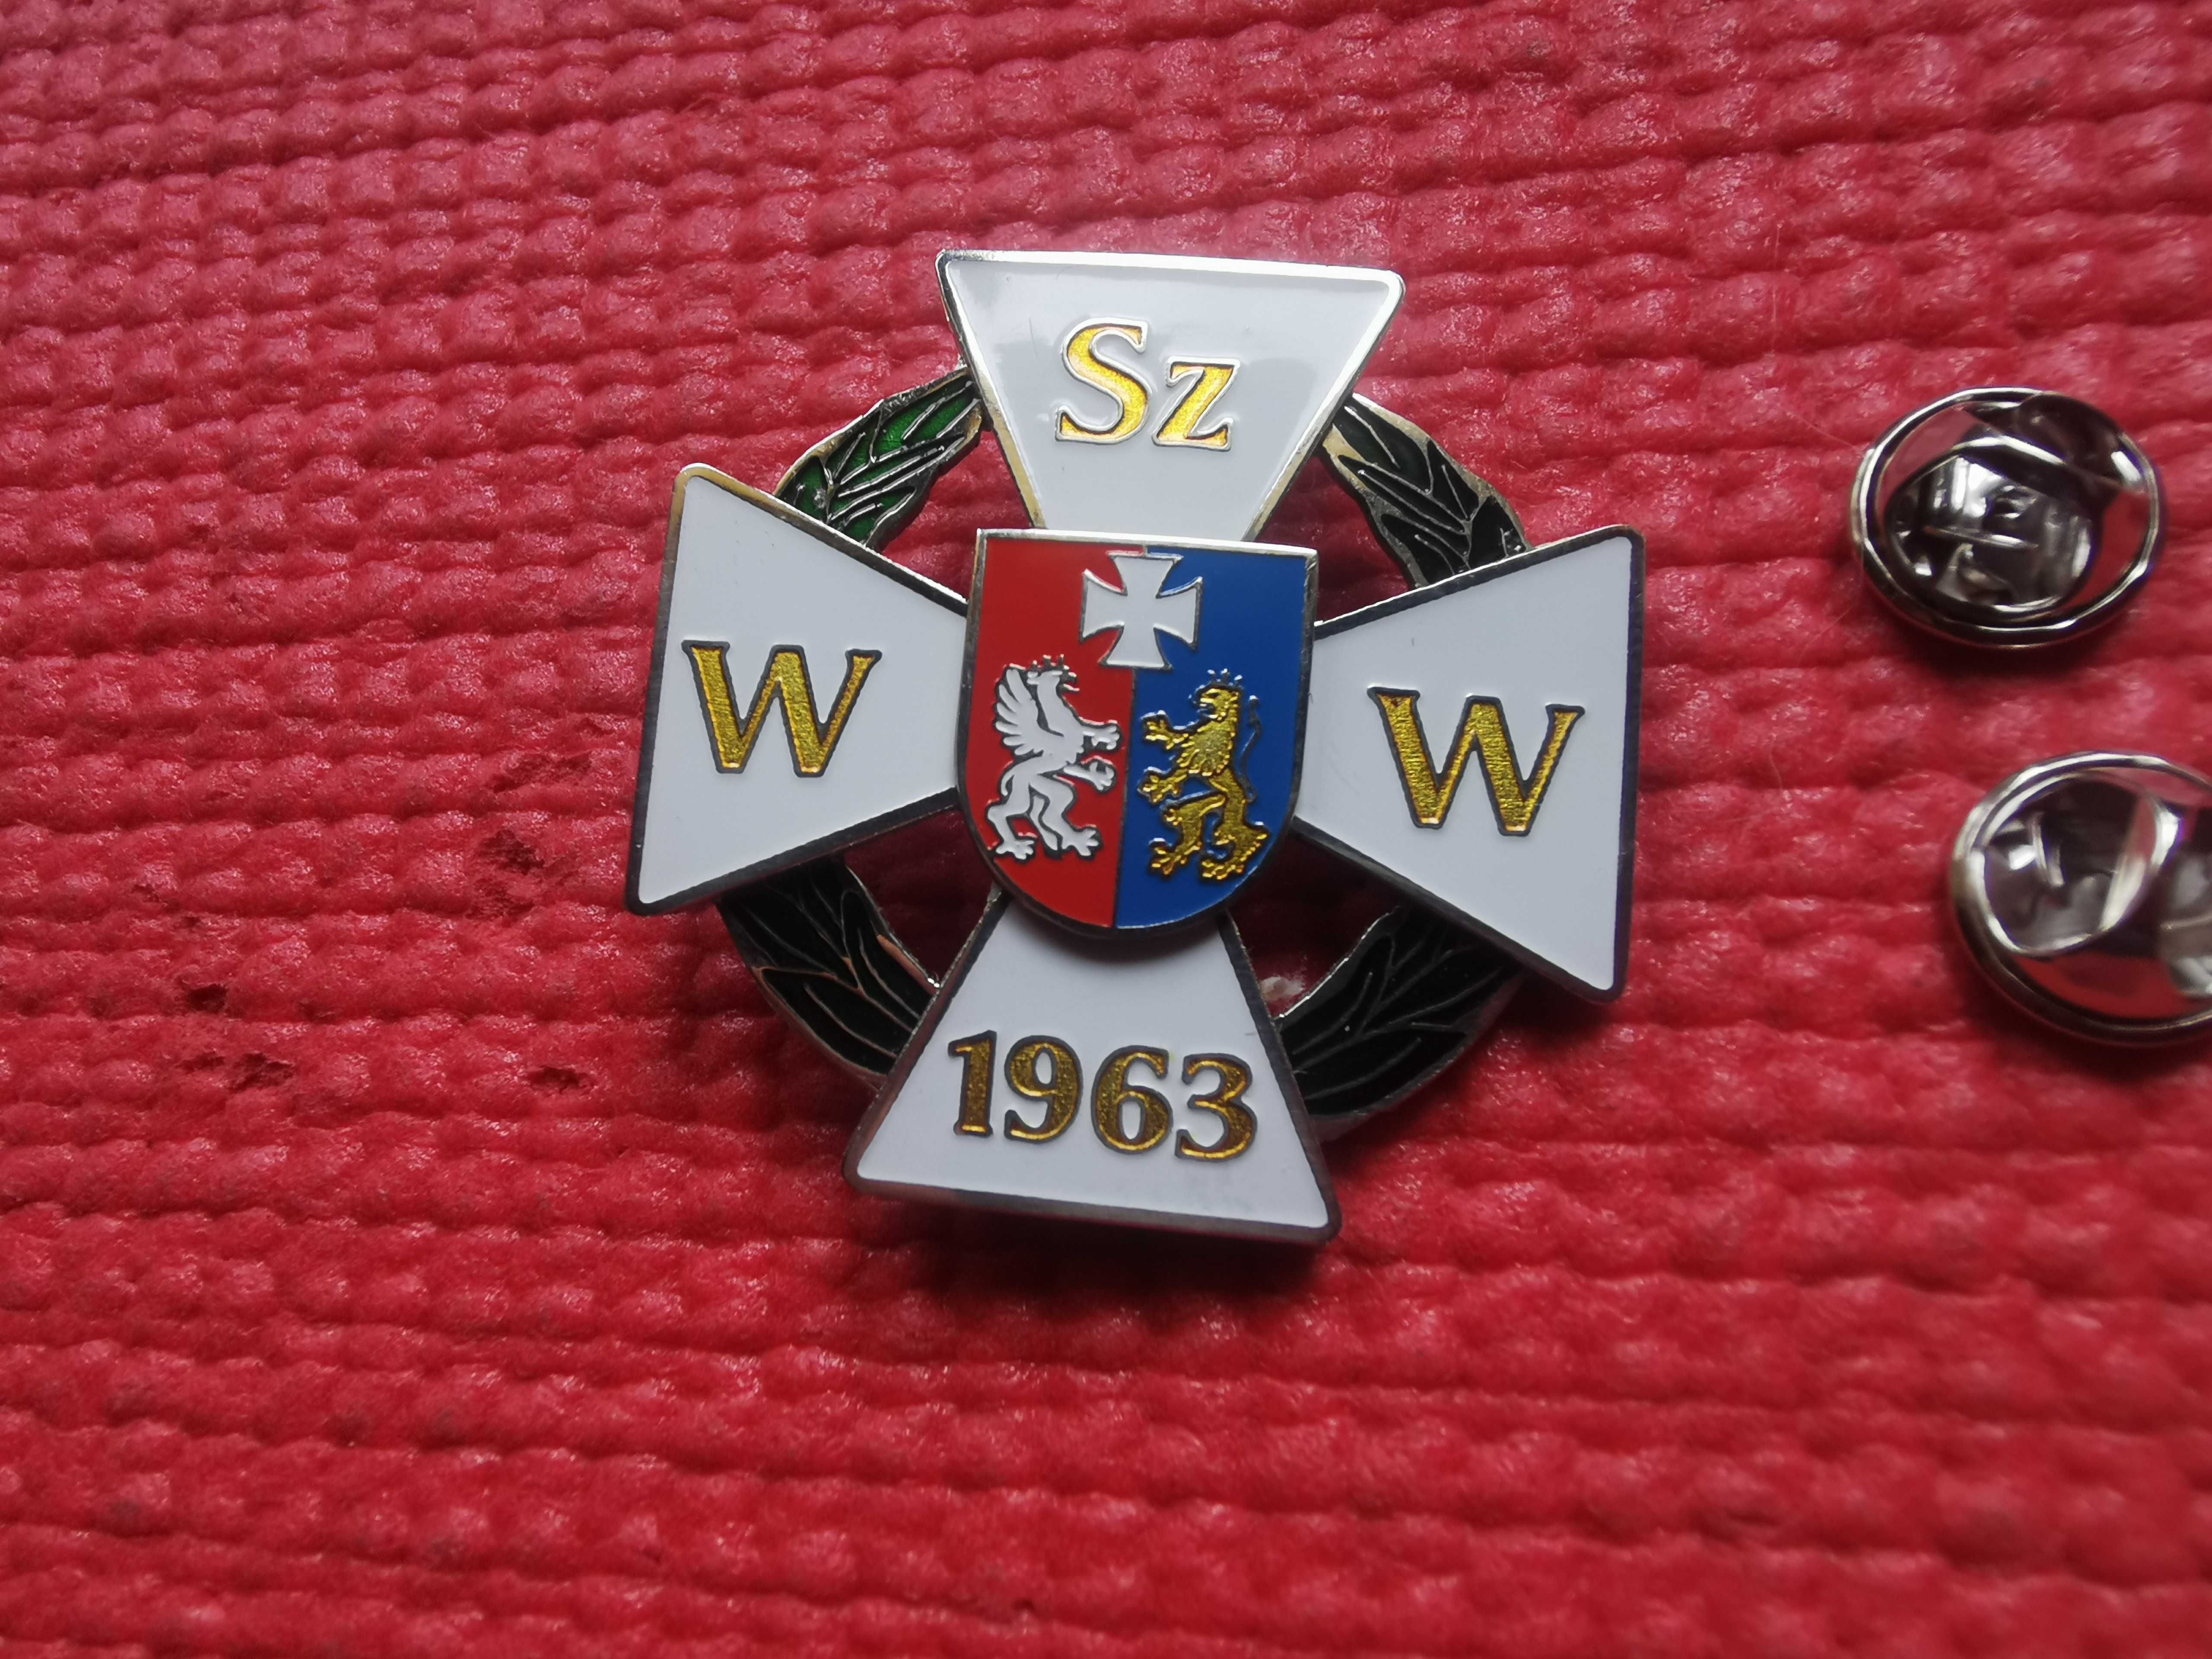 Odznaka WSzW Rzeszów Wojewódzki Sztab Wojskowy